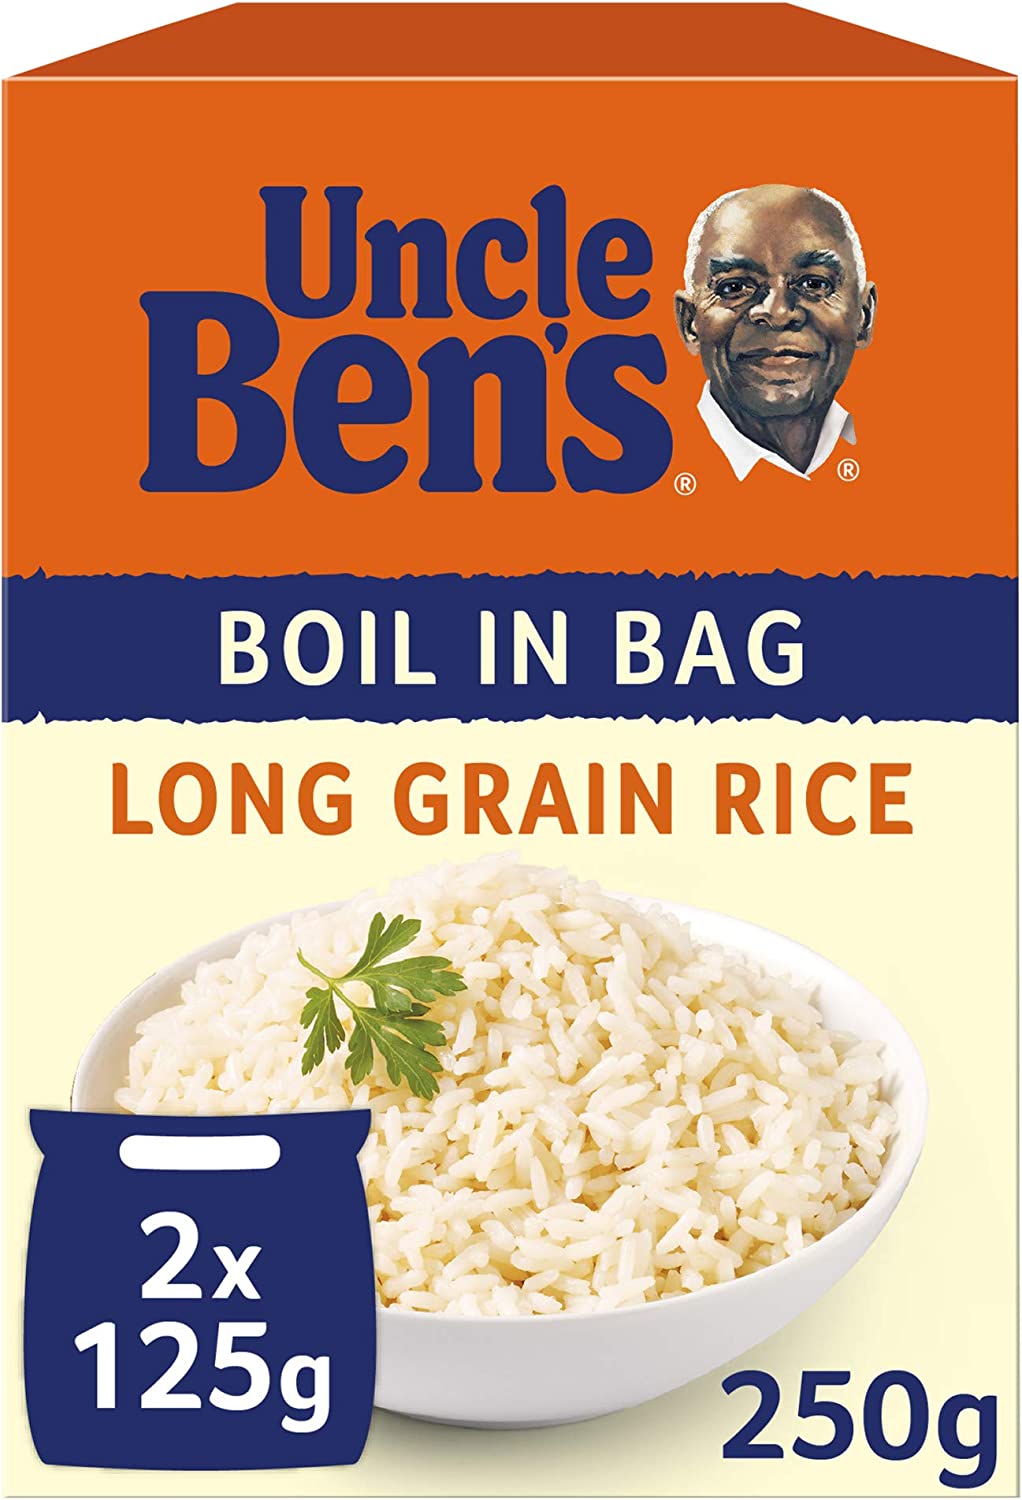 Ben's Original Long Grain Rice - Boil In Bag